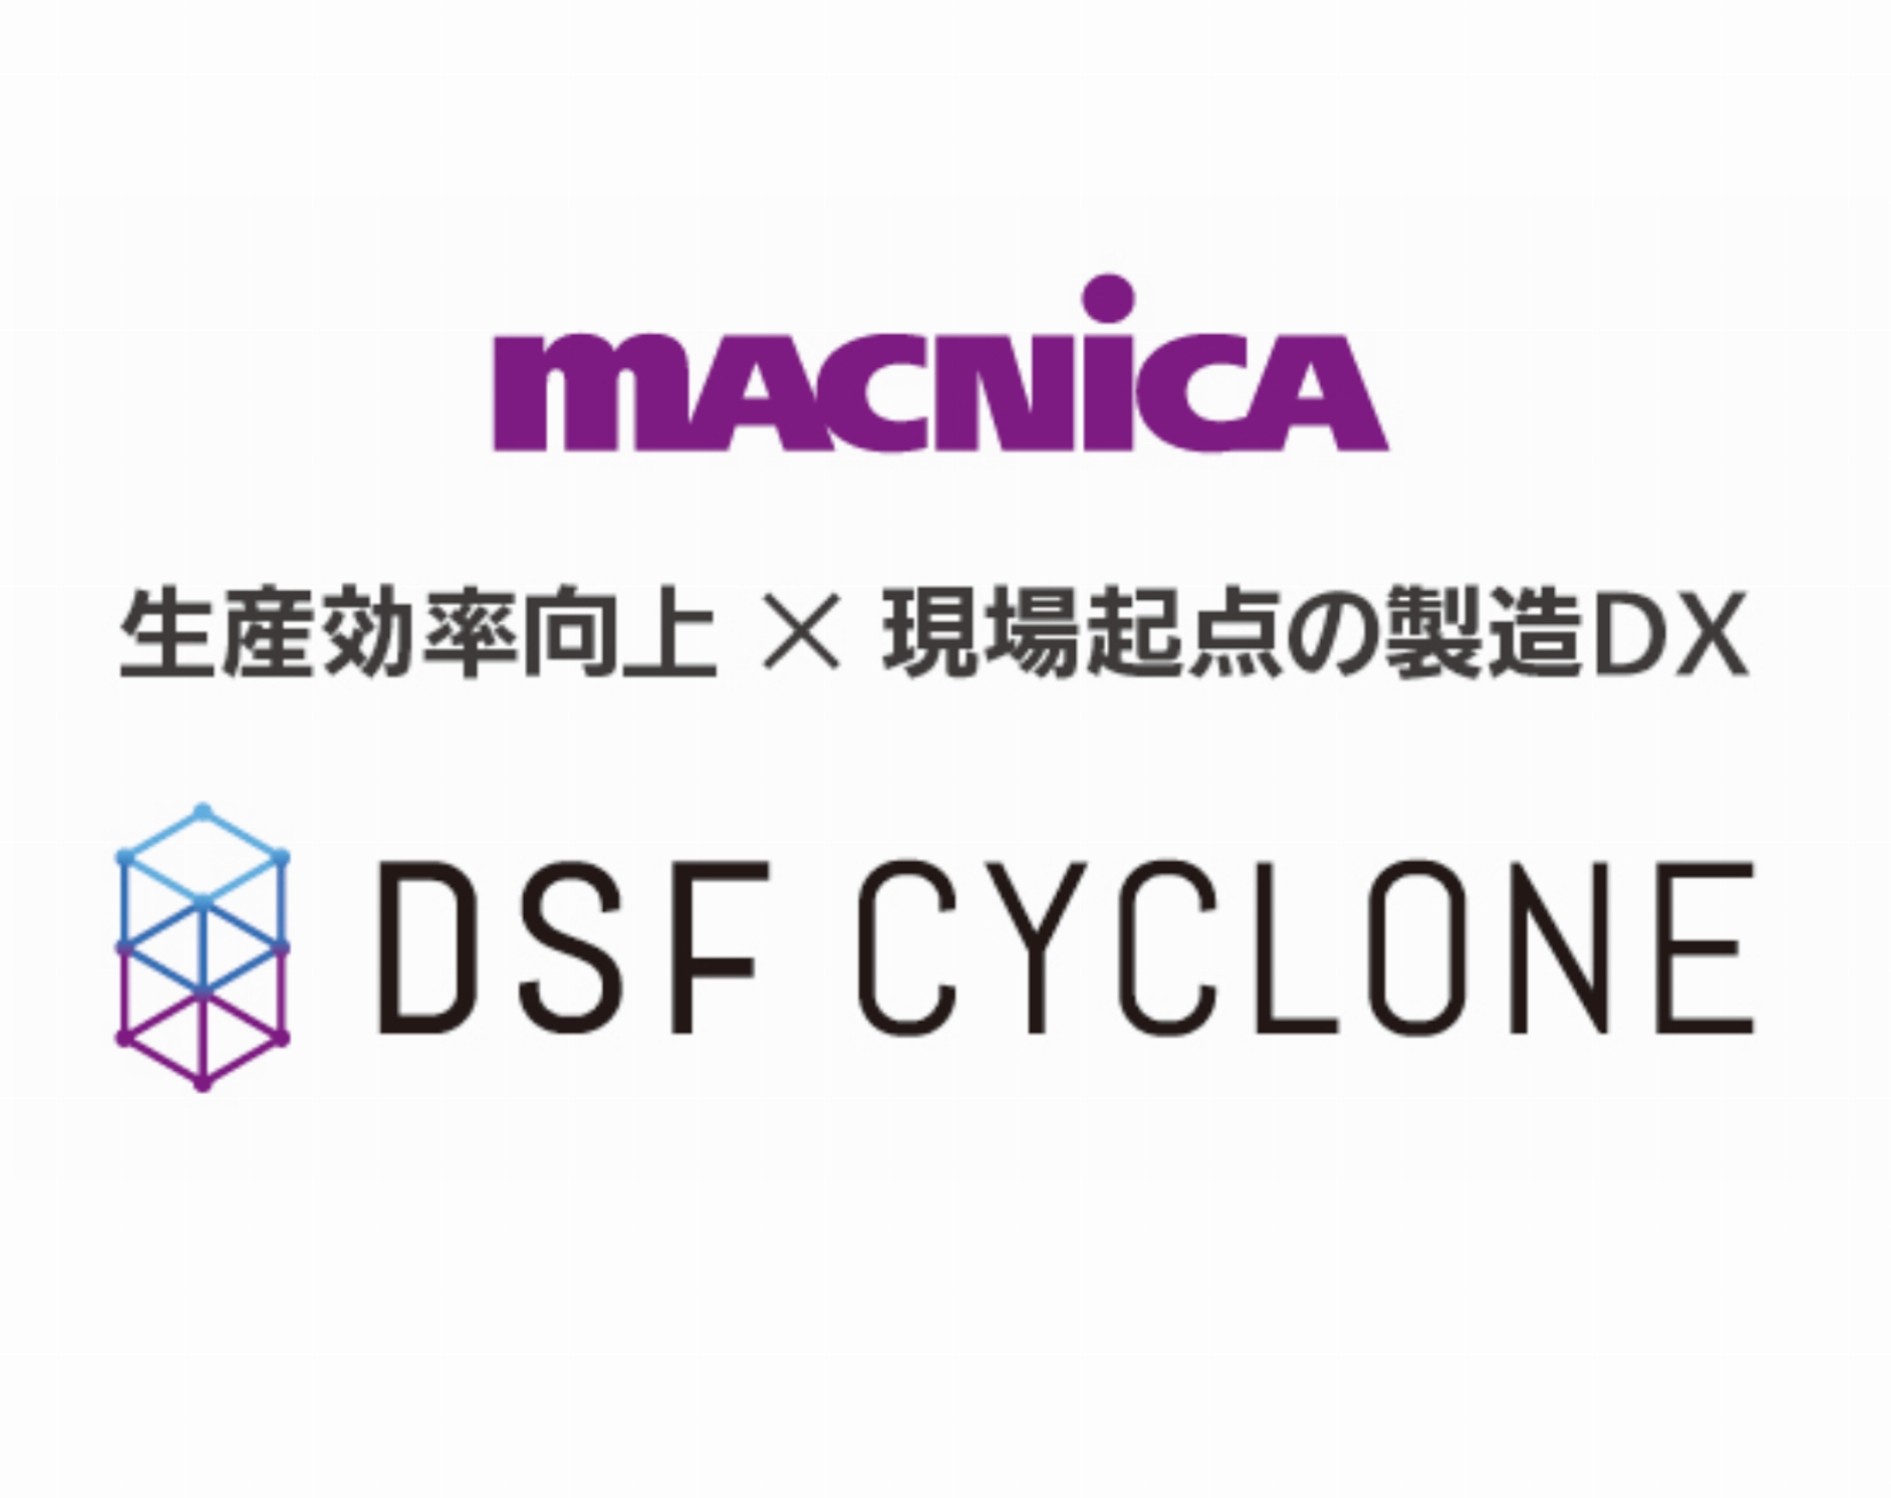 生産効率向上×現場起点の製造DX　DSF Cyclone